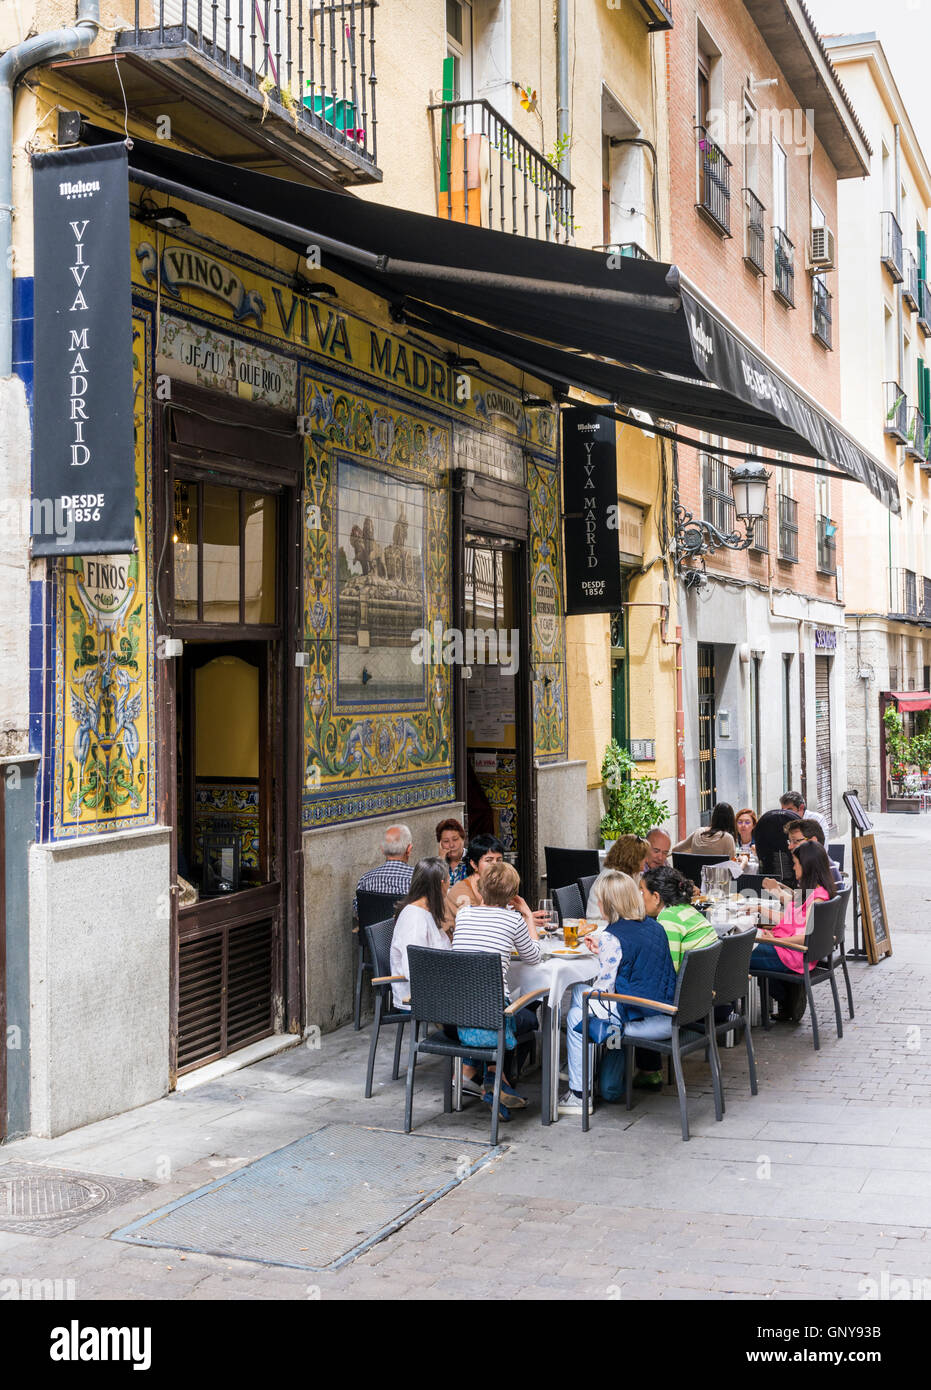 Personnes assises à l'extérieur de l'historique Viva Madrid restaurant dans le quartier de Huertas, Madrid, Espagne Banque D'Images